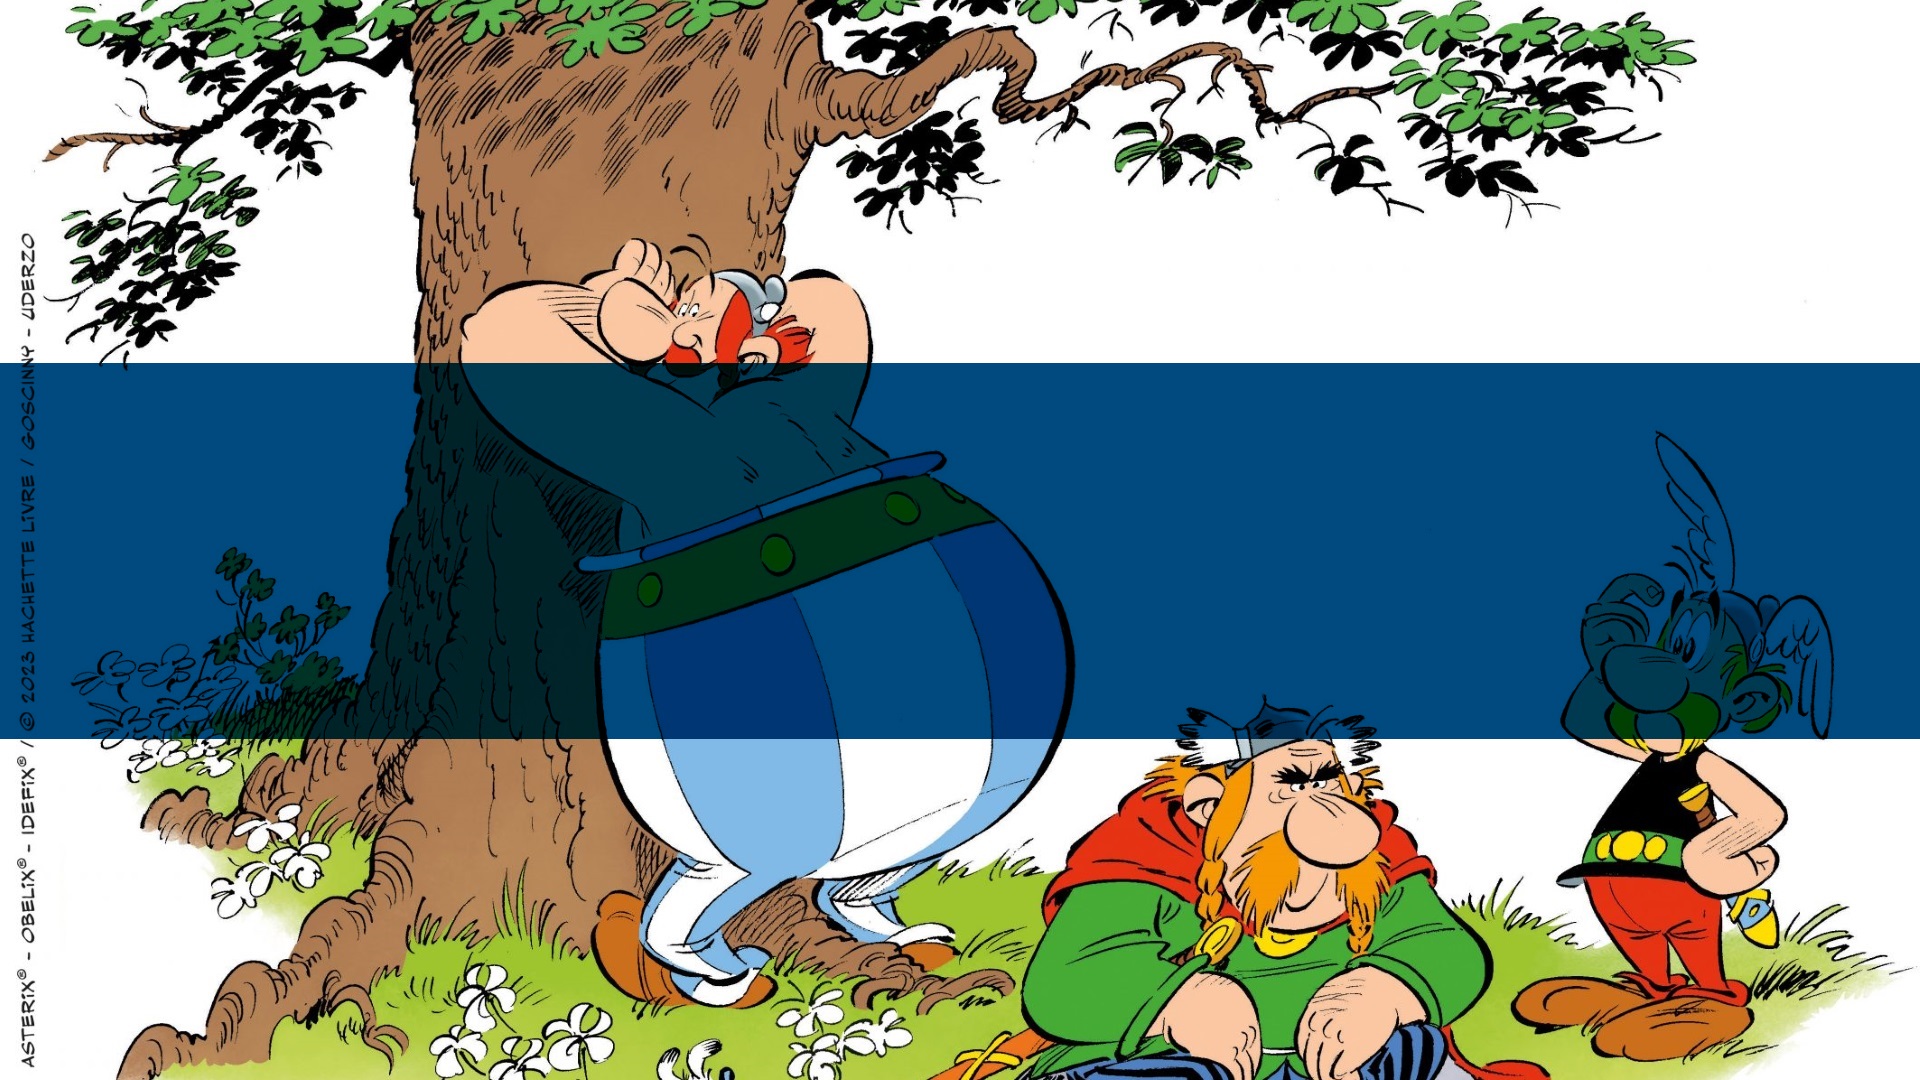 Asterix und Obelix sind zurück!